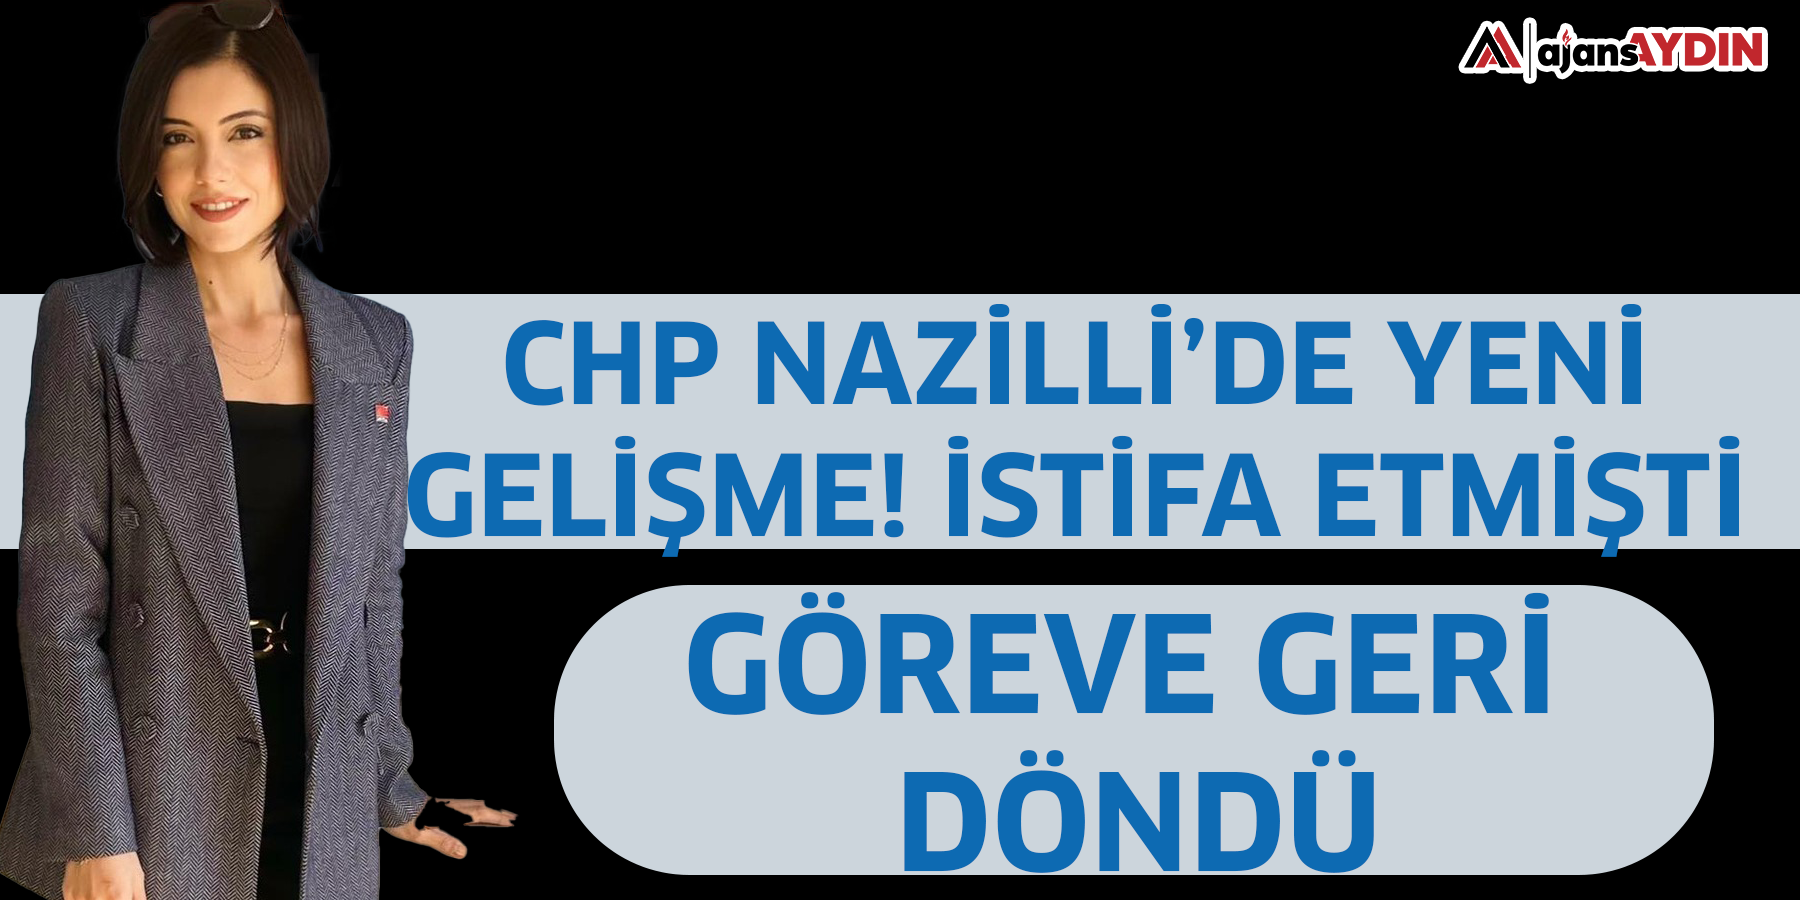 CHP Nazilli’de yeni gelişme! İstifa etmişti göreve geri döndü